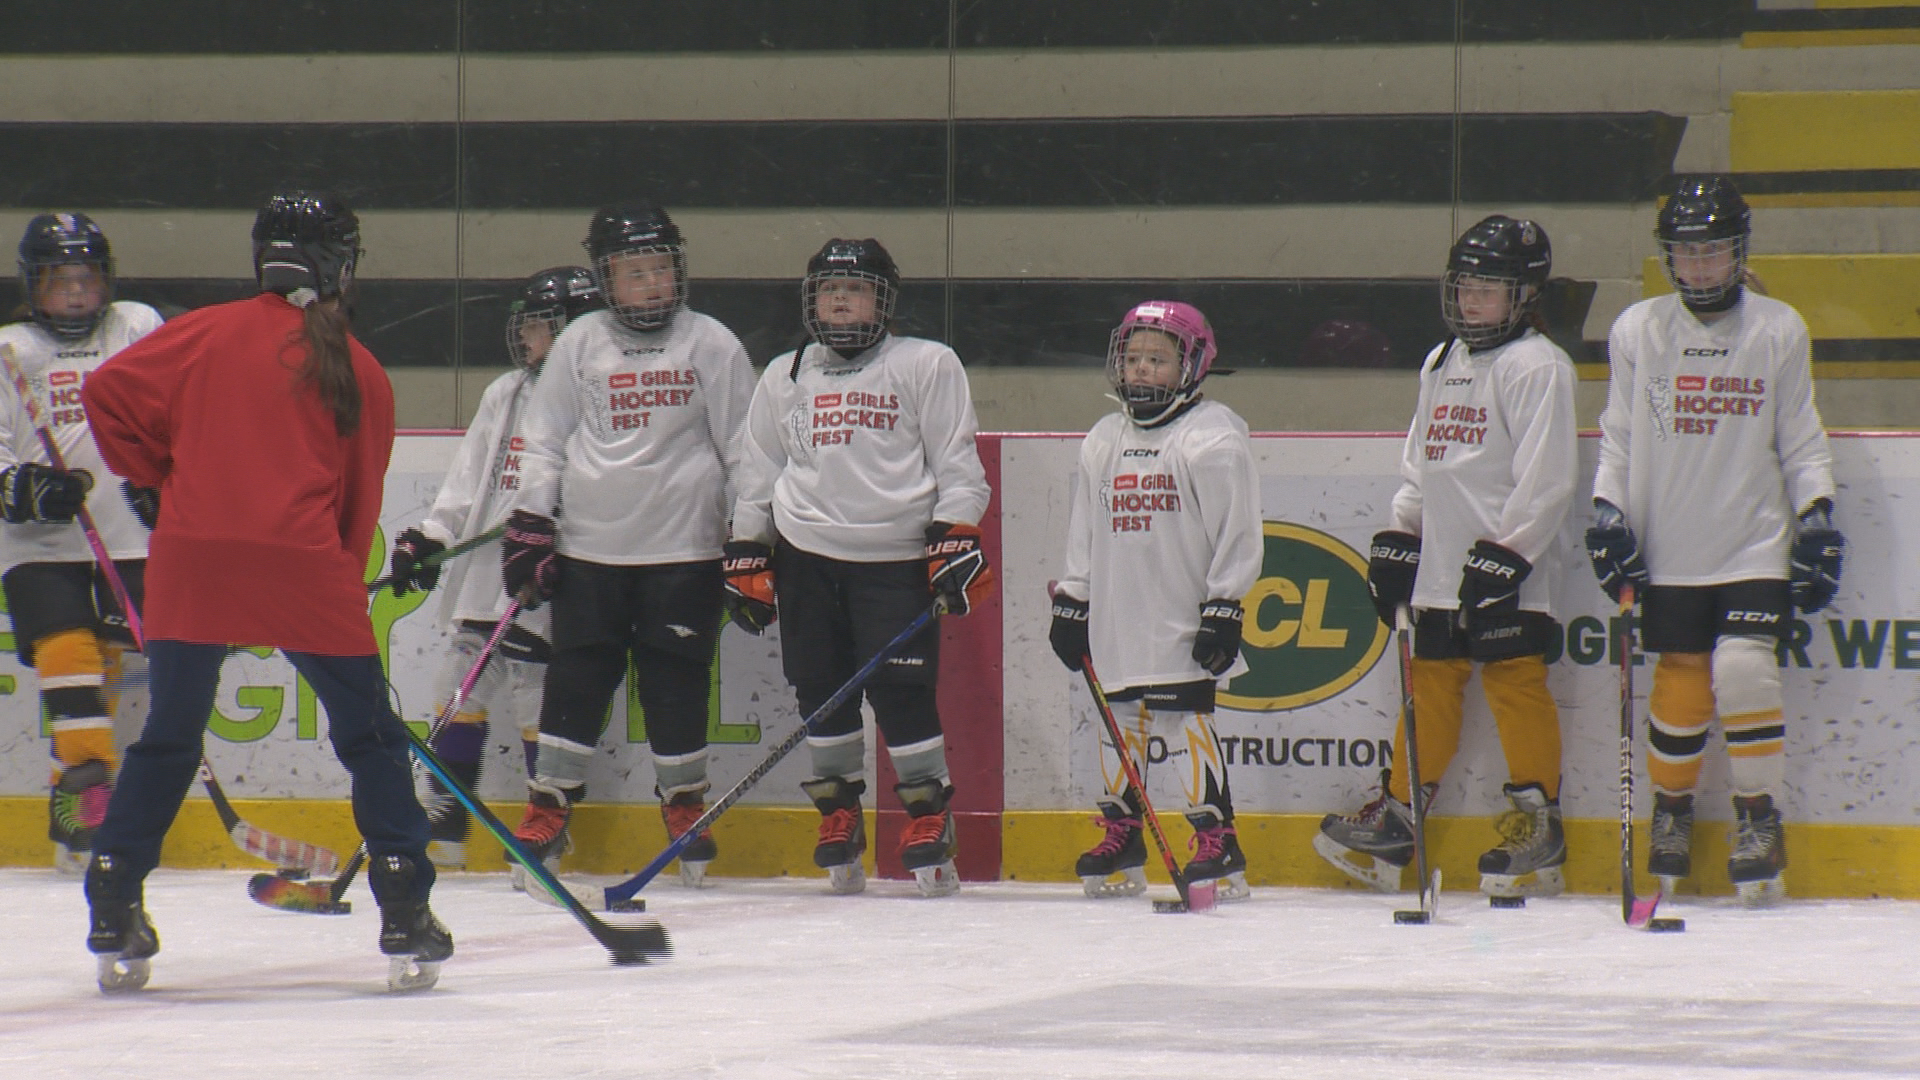 Girls HockeyFest се завръща в Уинипег, вдъхновявайки млади играчи